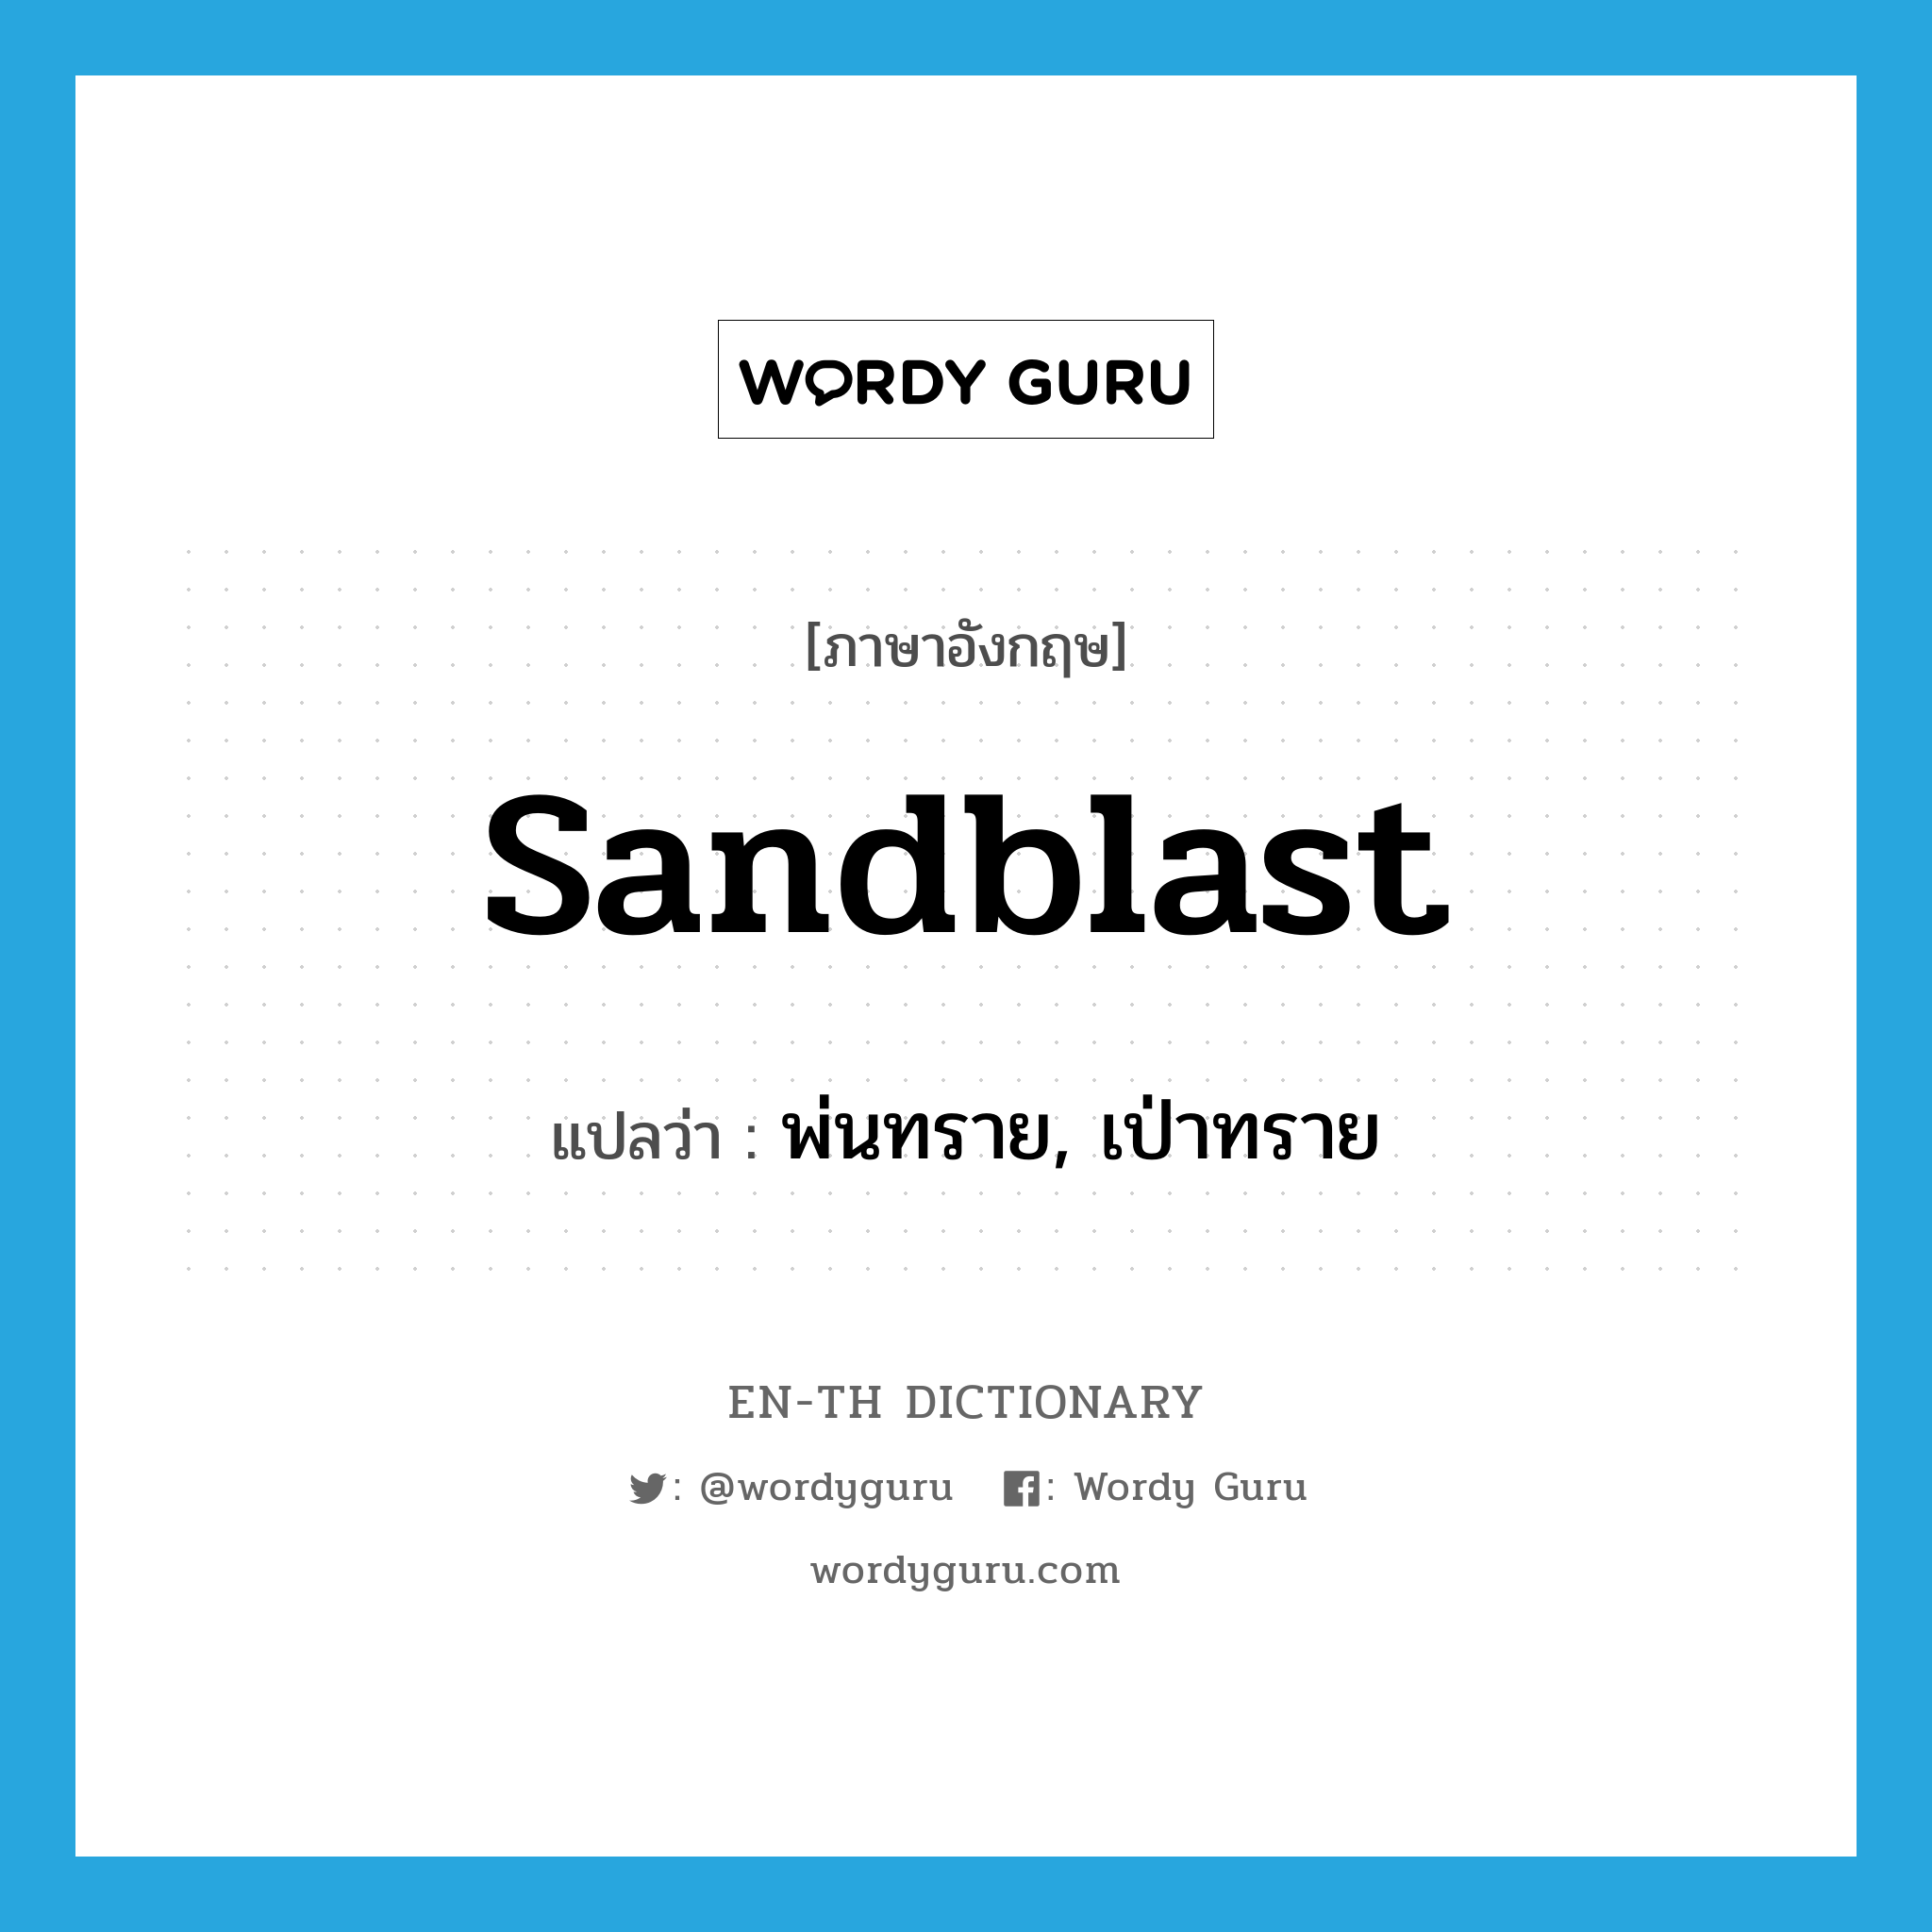 พ่นทราย, เป่าทราย ภาษาอังกฤษ?, คำศัพท์ภาษาอังกฤษ พ่นทราย, เป่าทราย แปลว่า sandblast ประเภท VT หมวด VT